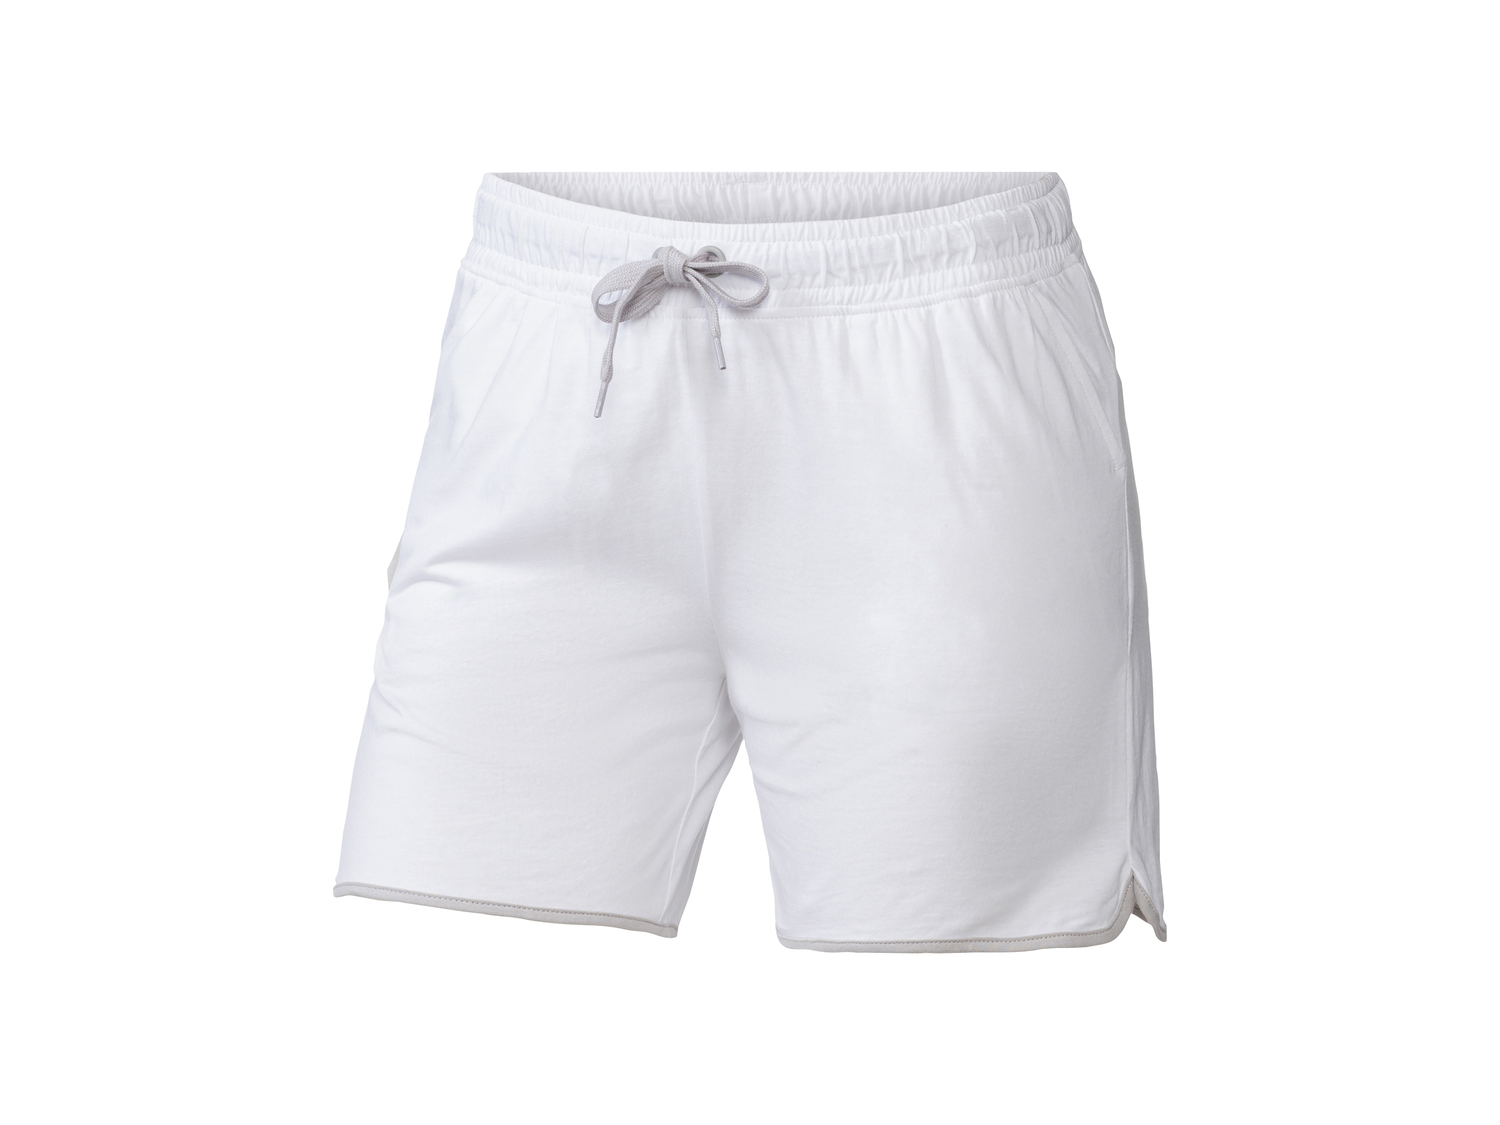 Shorts da donna Kappa, prezzo 12.99 &#8364; 
Misure: S-XL
Taglie disponibili

Caratteristiche
 ...